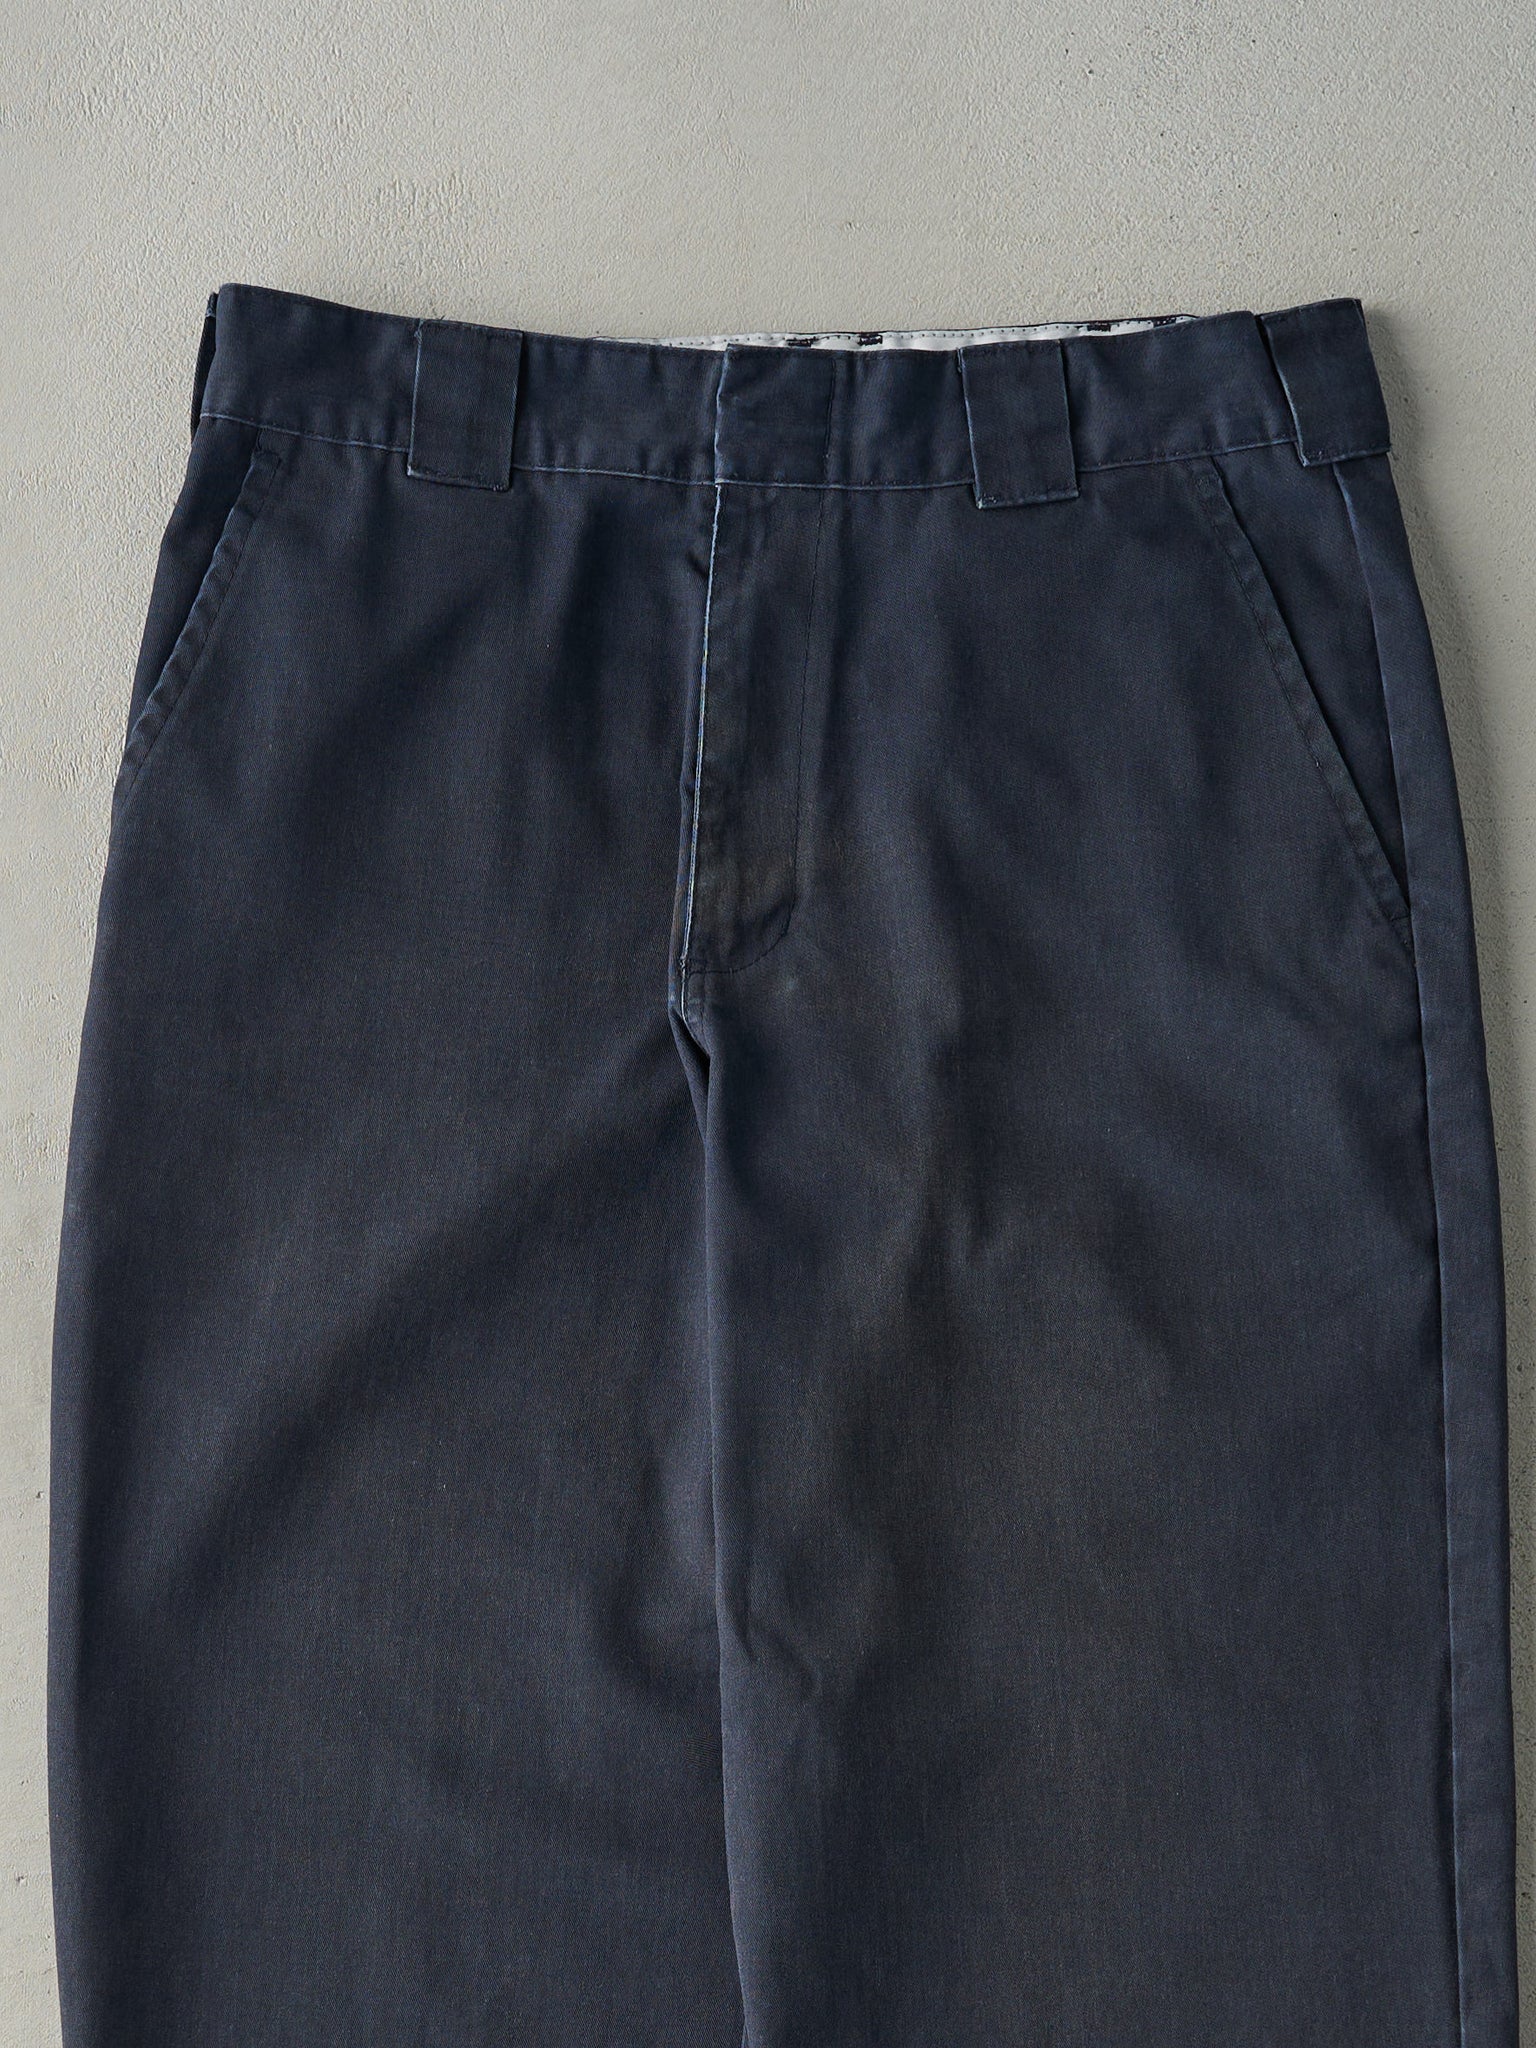 Vintage Y2K Faded Navy Blue Dickies Work Pants (32x26)